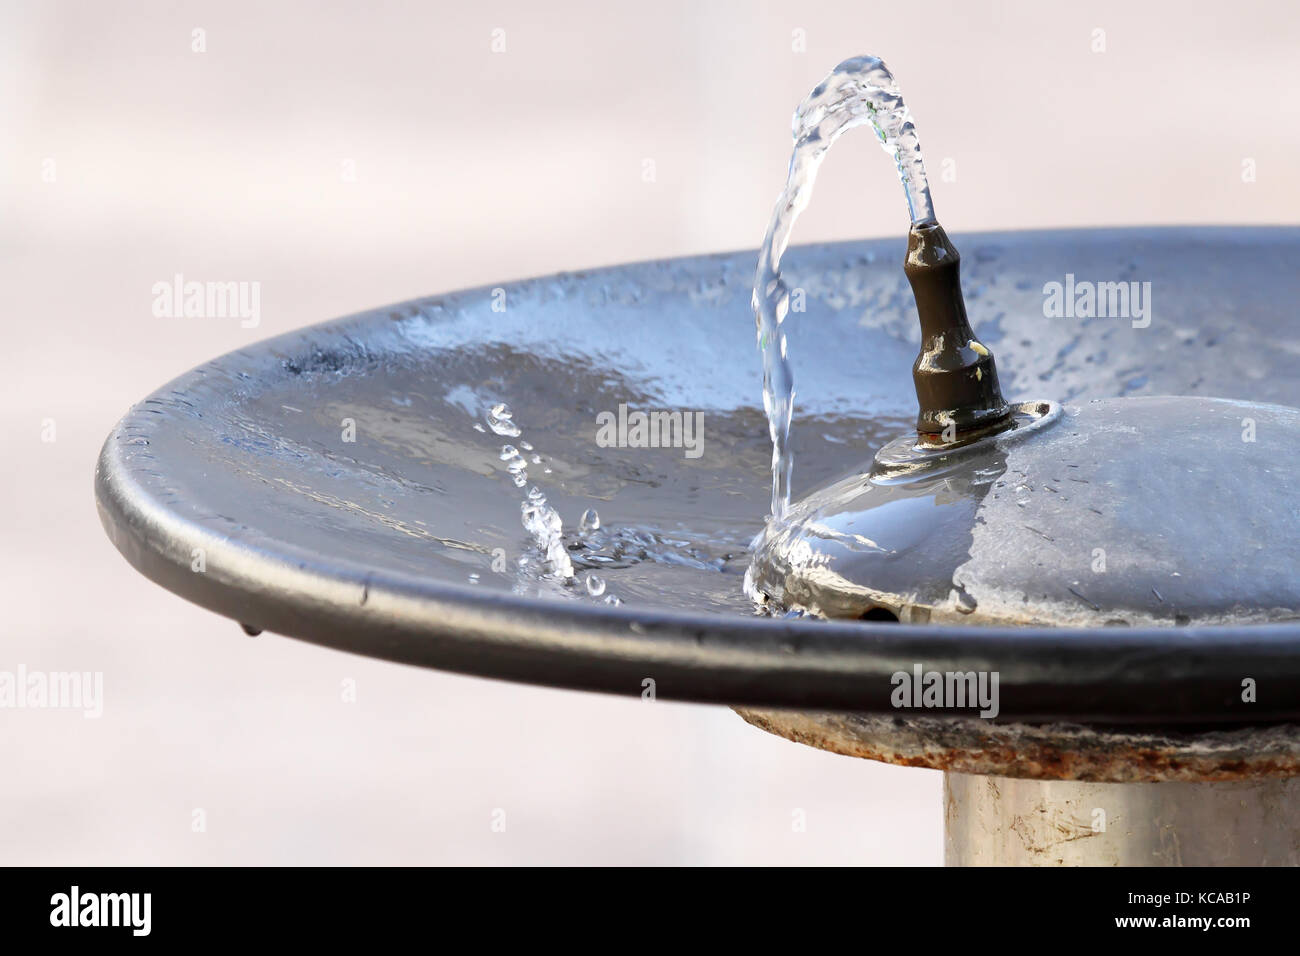 L'eau qui coule d'un robinet dans une fontaine publique et tomber dans une assiette Banque D'Images